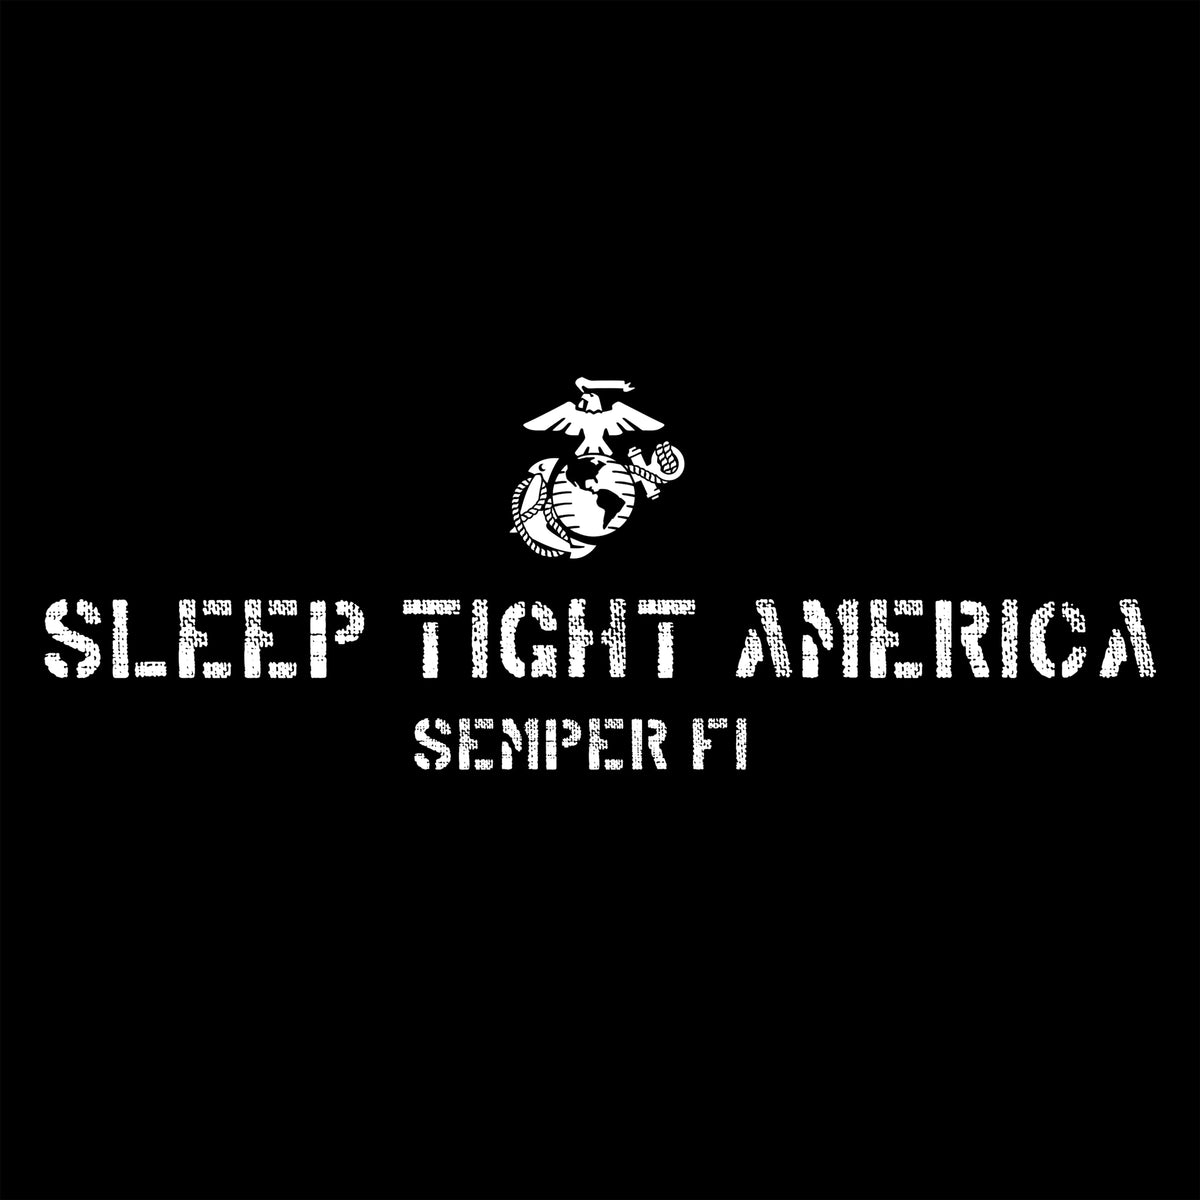 Marines Sleep Tight America Hoodie